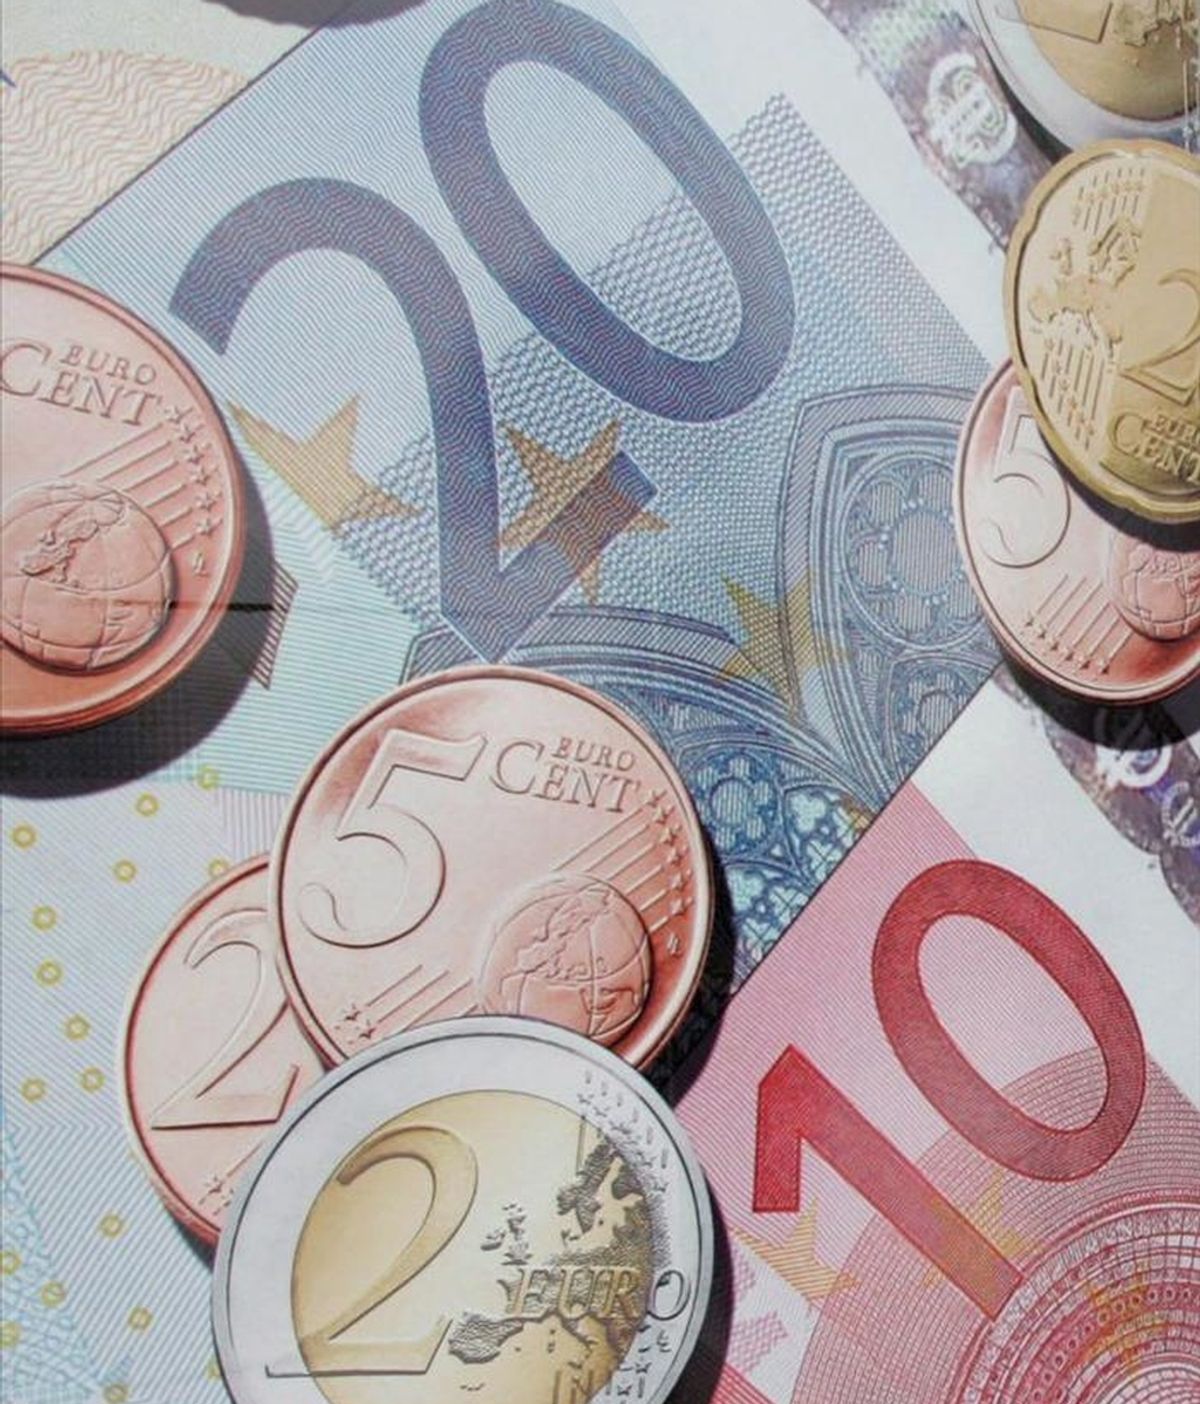 La Generalitat ultima una emisión de 2.700 millones de euros en bonos para inversores minoristas, que serán a uno y dos años, con un tipo de interés de entre el 4,25 y 4,75 por ciento, según ha anunciado el Departamento de Economía. EFE7Archivo